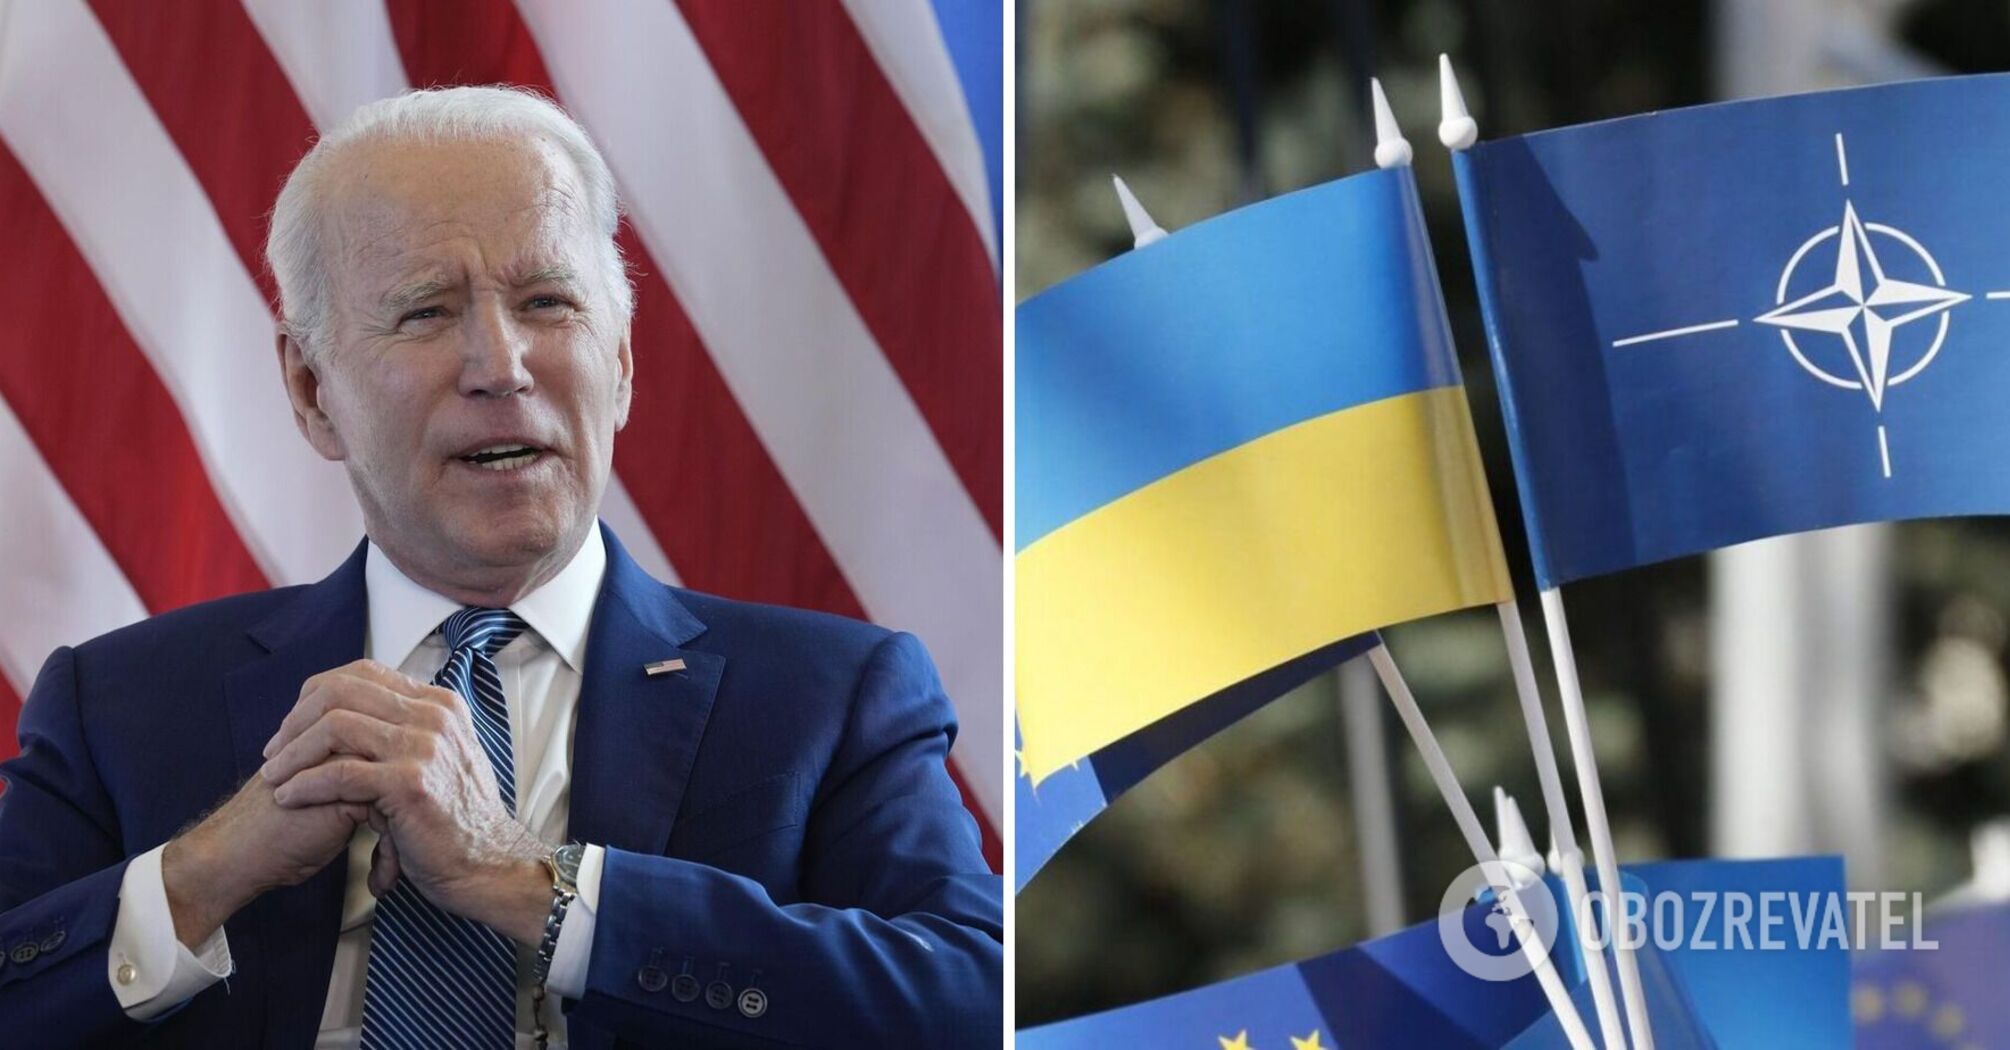 Biden is not talking about Ukraine's membership in NATO yet